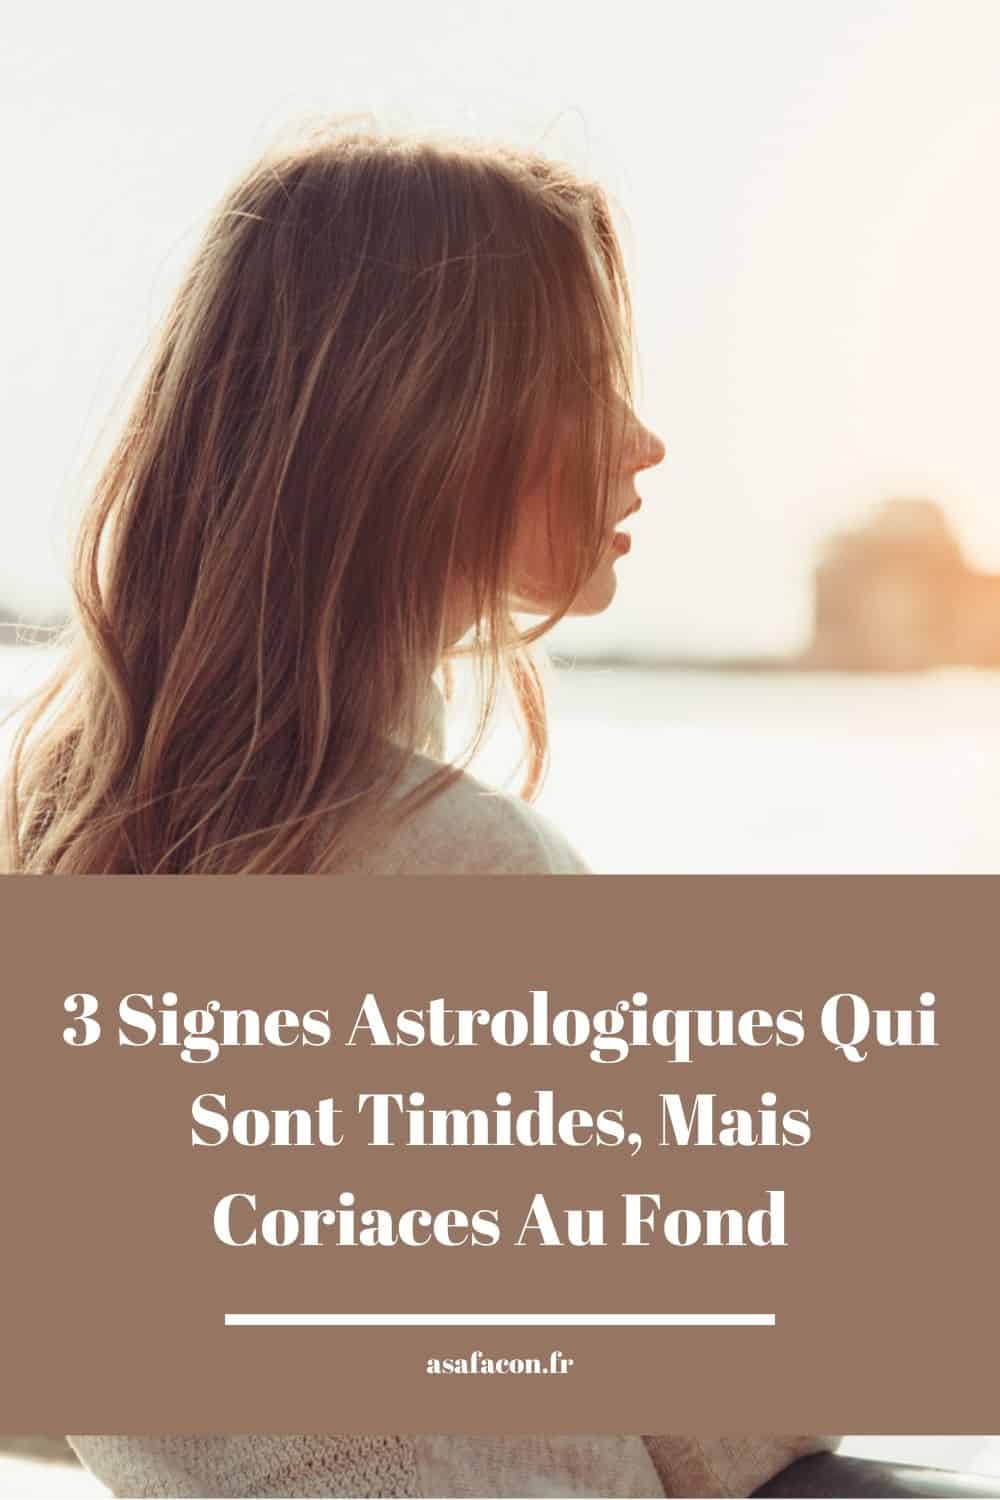 3 Signes Astrologiques Qui Sont Timides, Mais Coriaces Au Fond